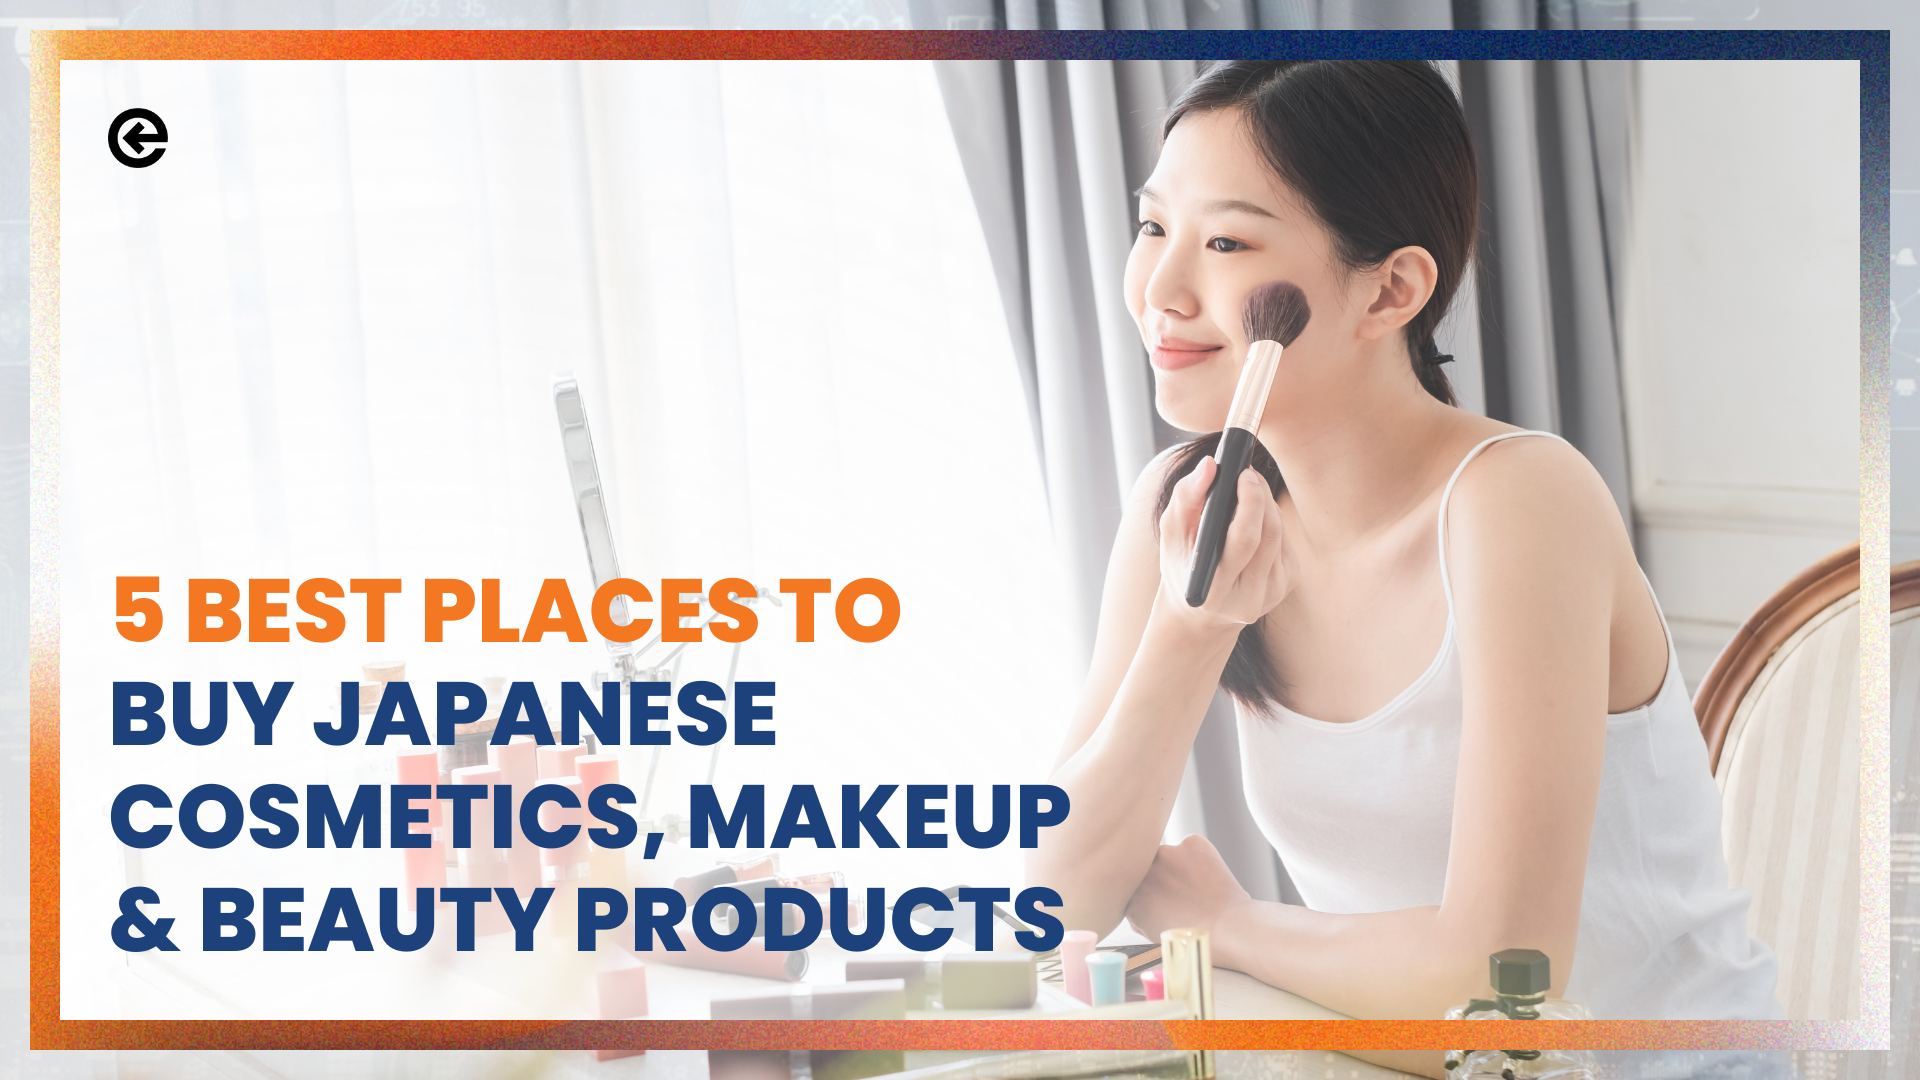 Die 5 besten Orte, um japanische Kosmetik, Make-up und Schönheitsprodukte zu kaufen